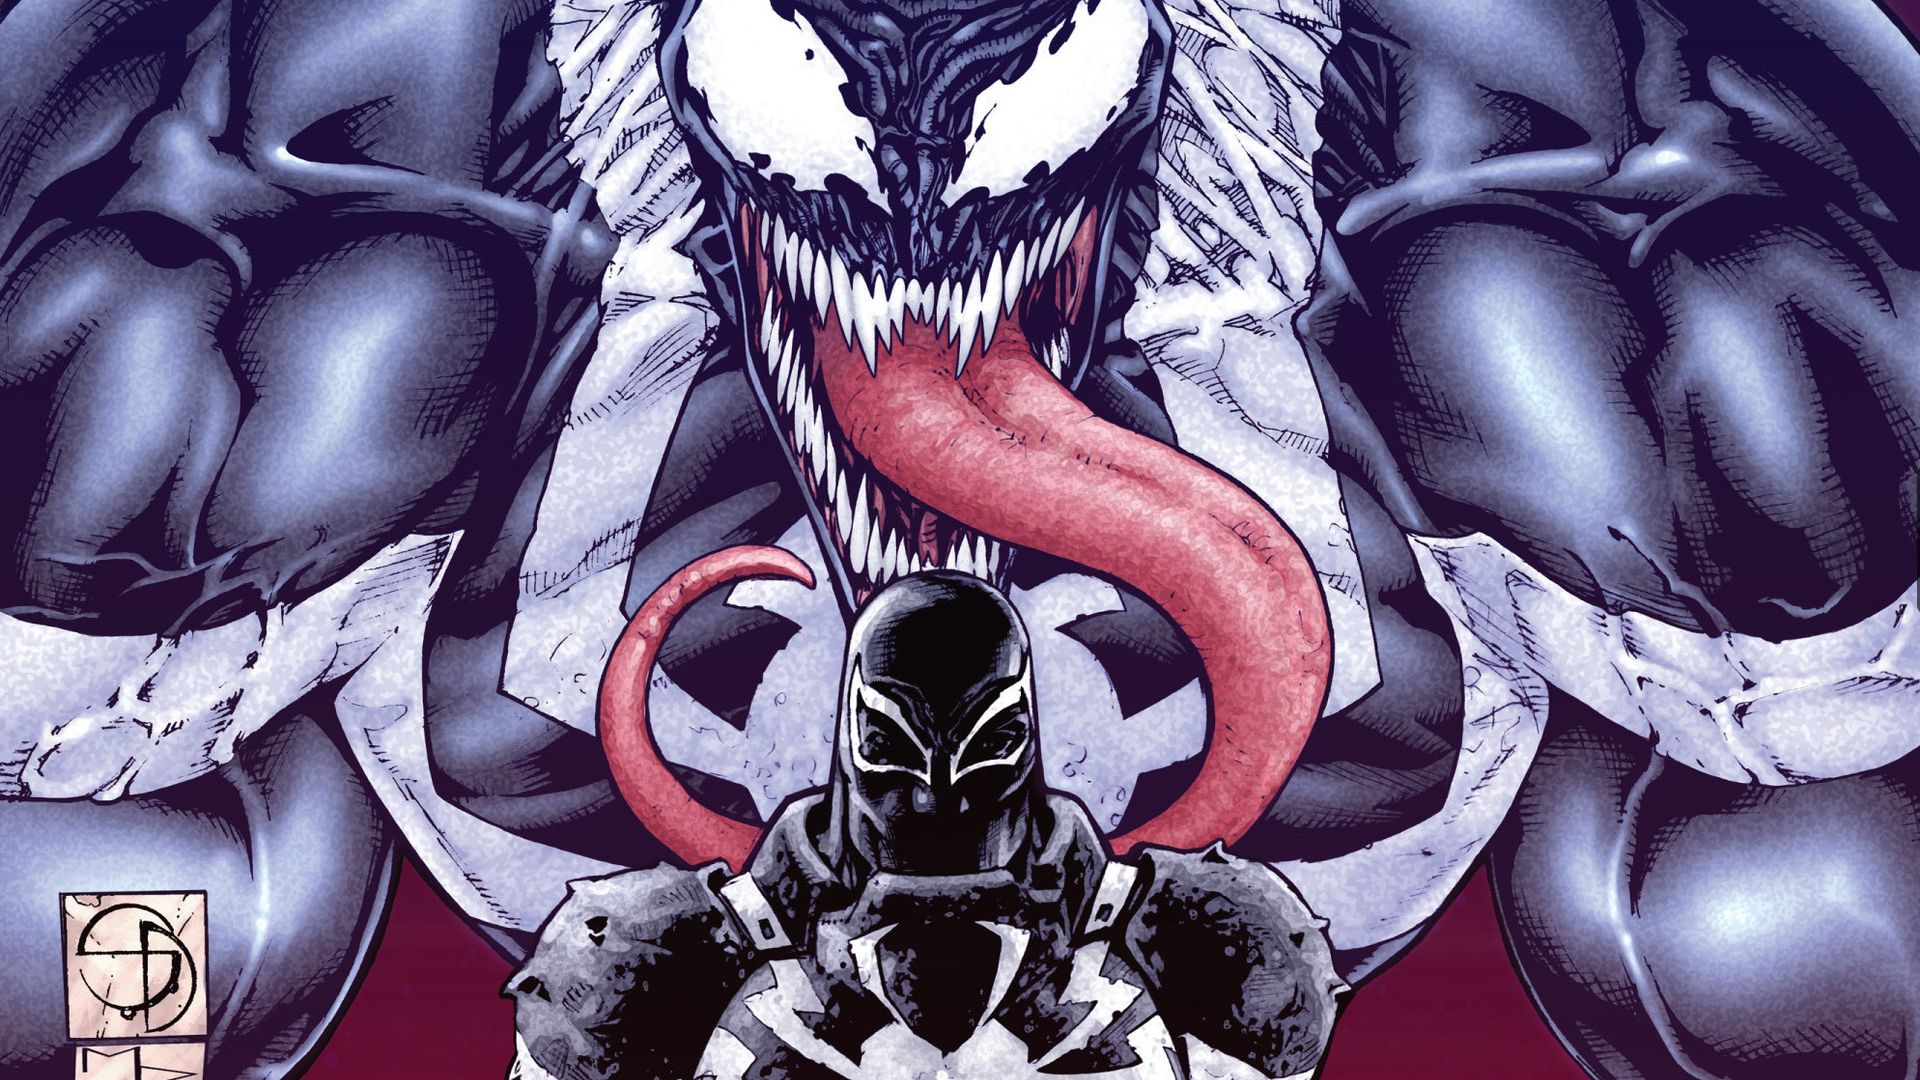 8k Agent Venom Images